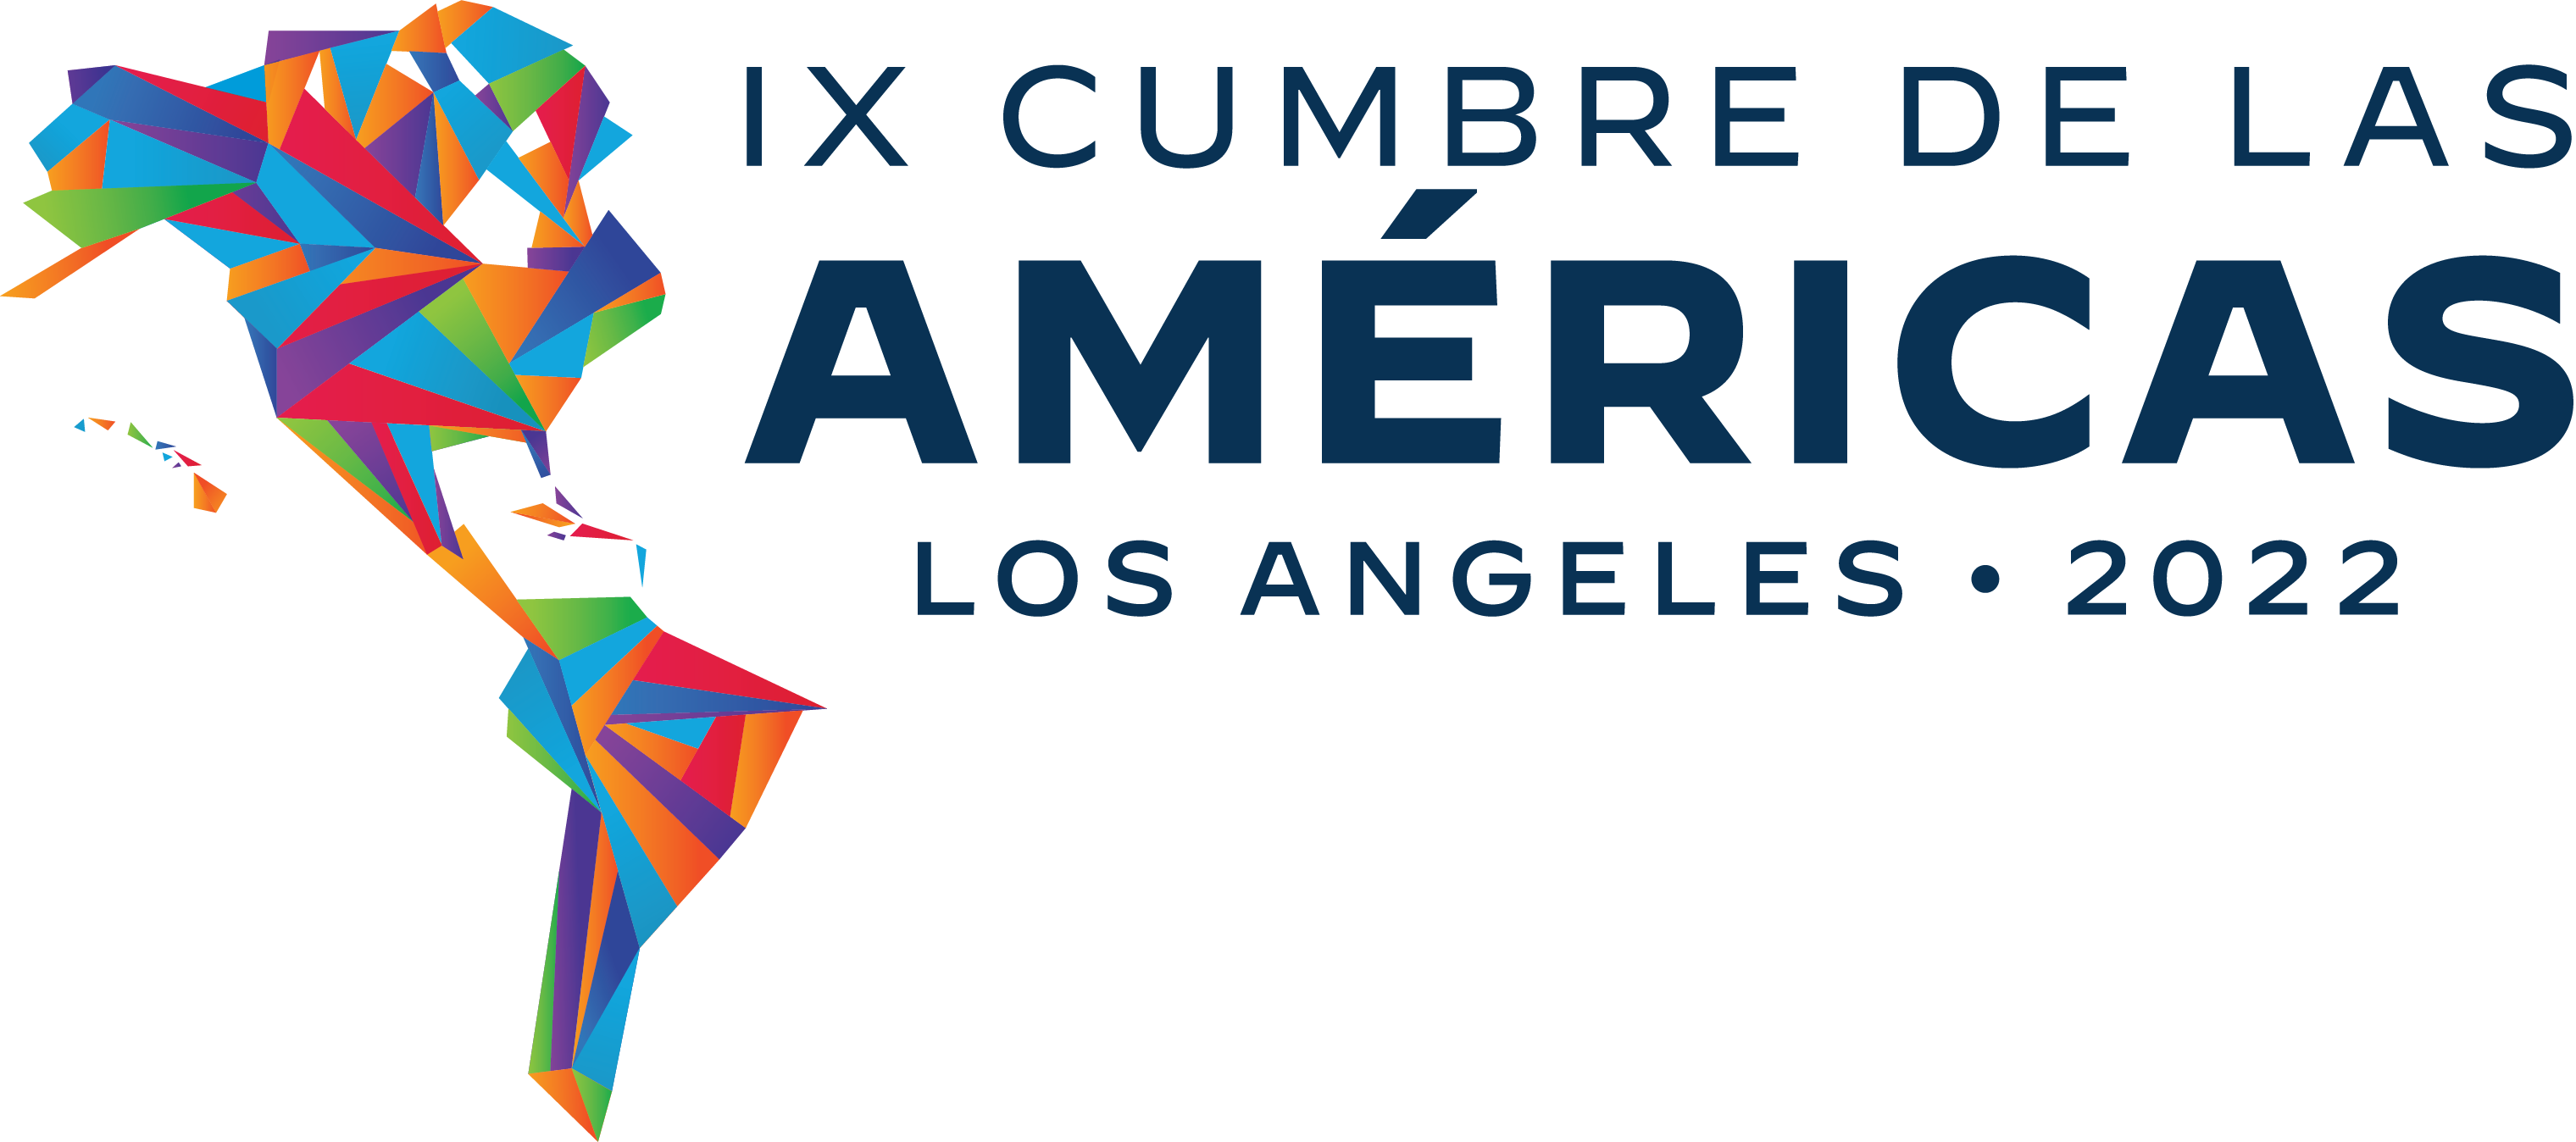 IX Summit Logo Spanish